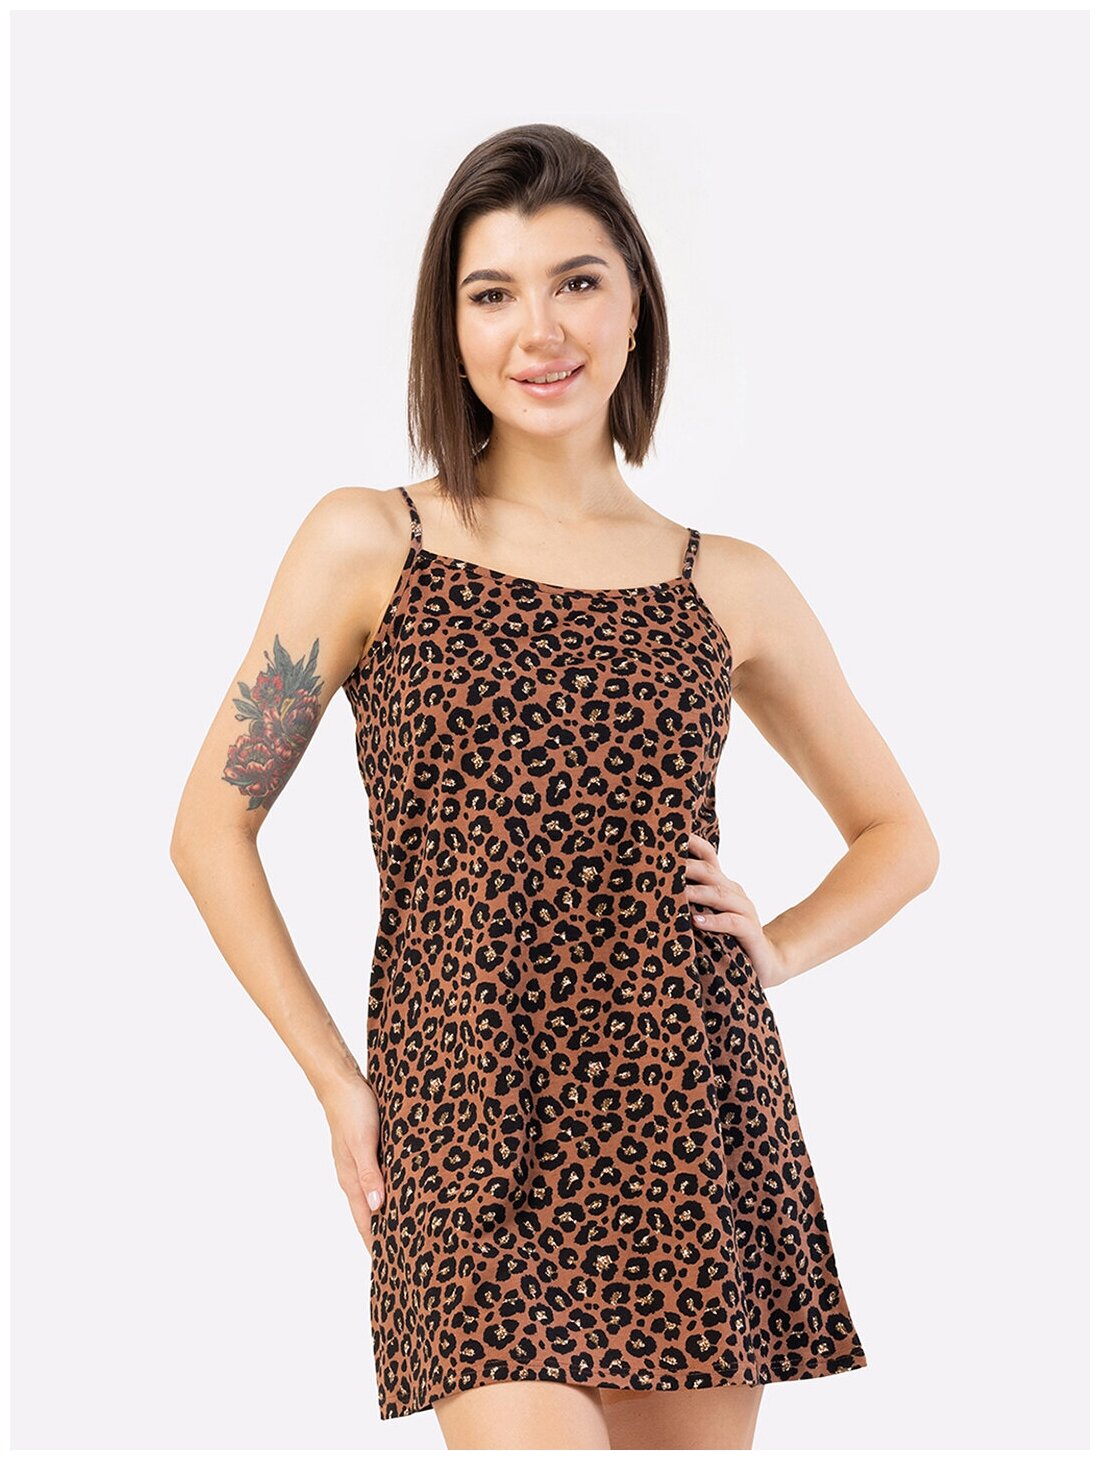 Сорочка женская HappyFox, HF3000MSP размер 44, цвет леопард - фотография № 1